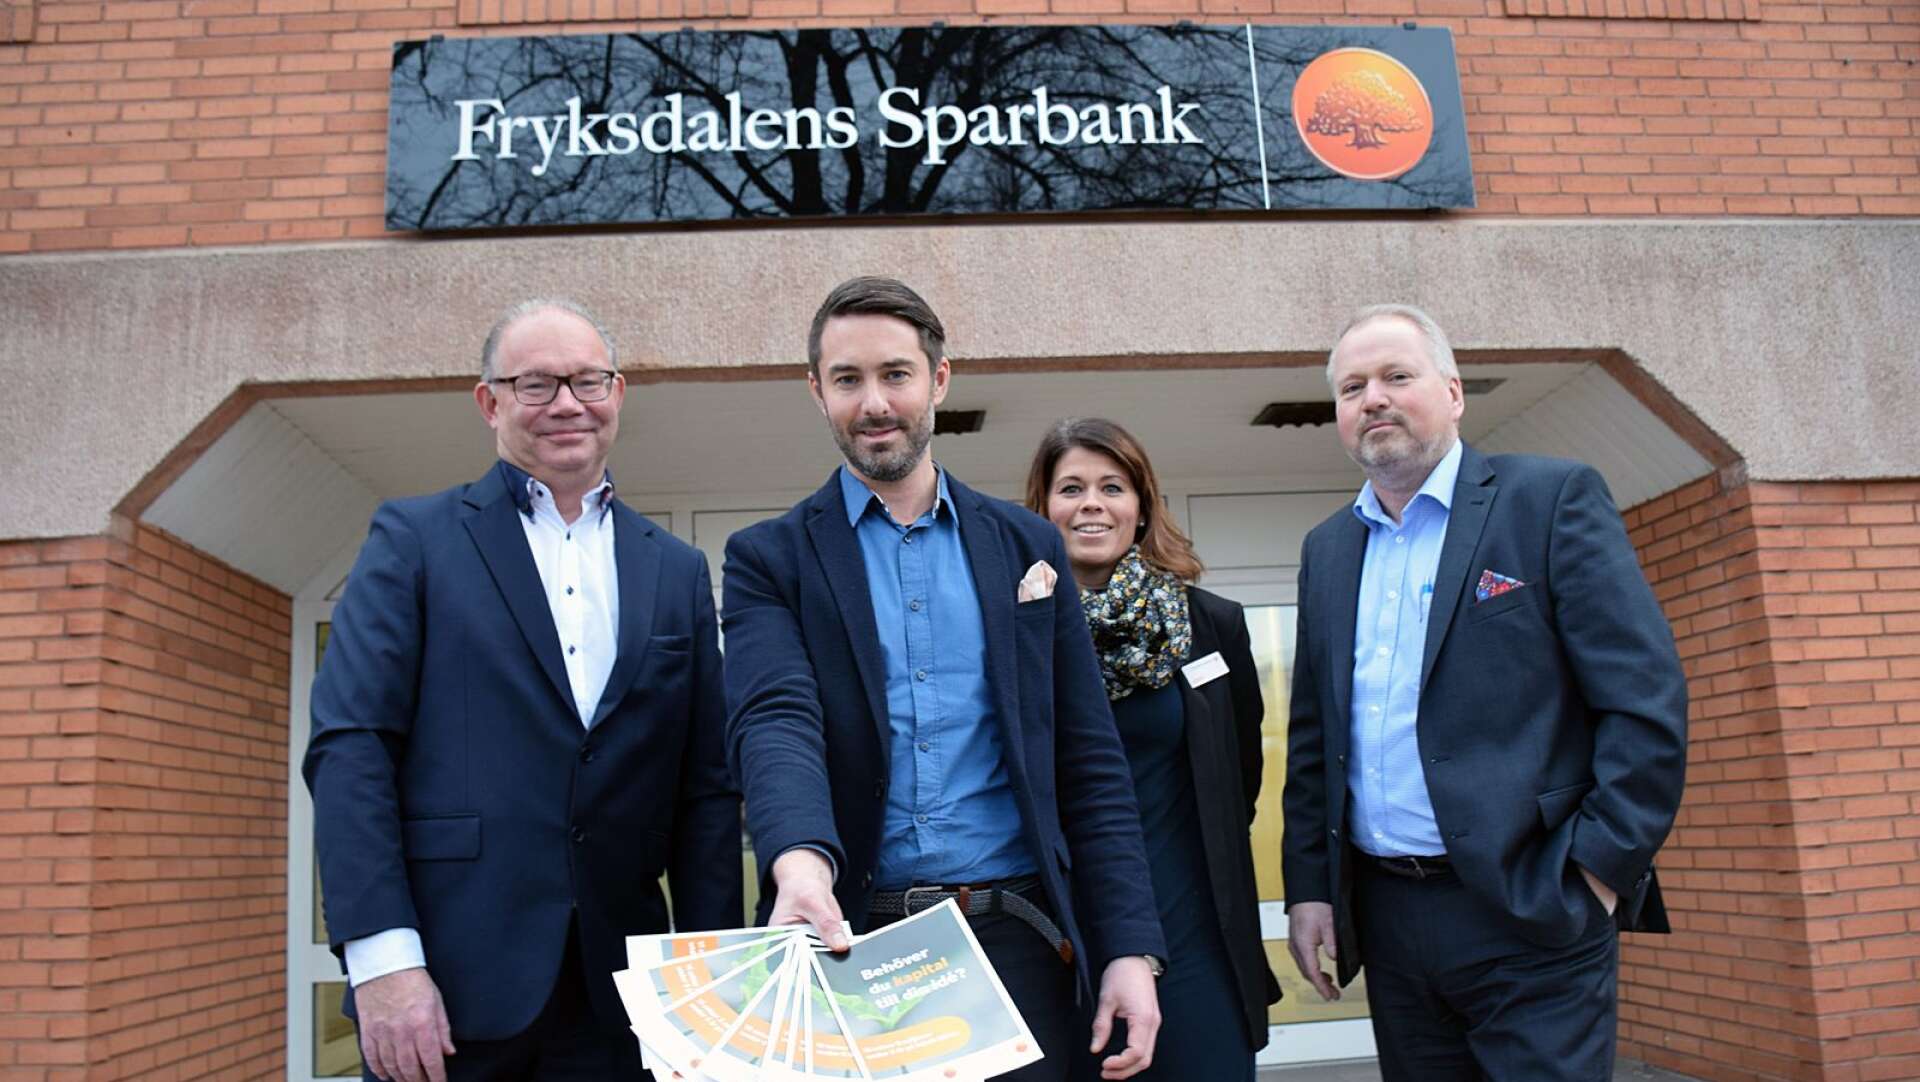 Här kan det finnas riskkapital för mindre företag. Från vänster Håkan Nordblad, vd Westra Wermlands sparbank och från Fryksdalens sparbank: Claes Edberg, företagsmarknadschef, Anna Öhgren Bodén, kommunikatör och Anders Bäckman, vd.